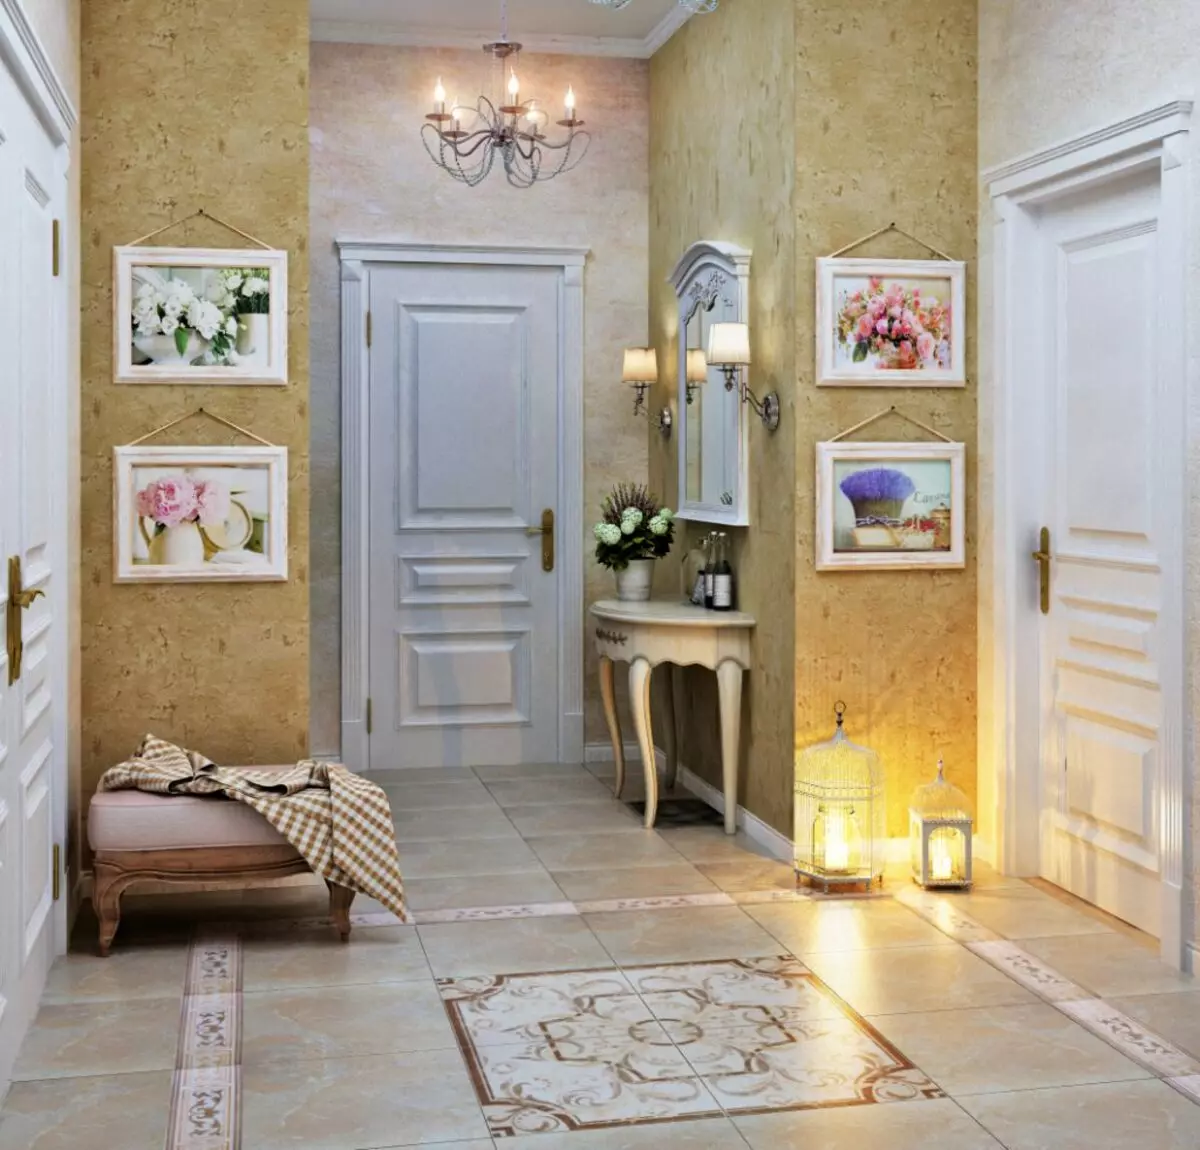 Registrering av korridoren i stil med Provence: Fotointeriörer och allmänna råd